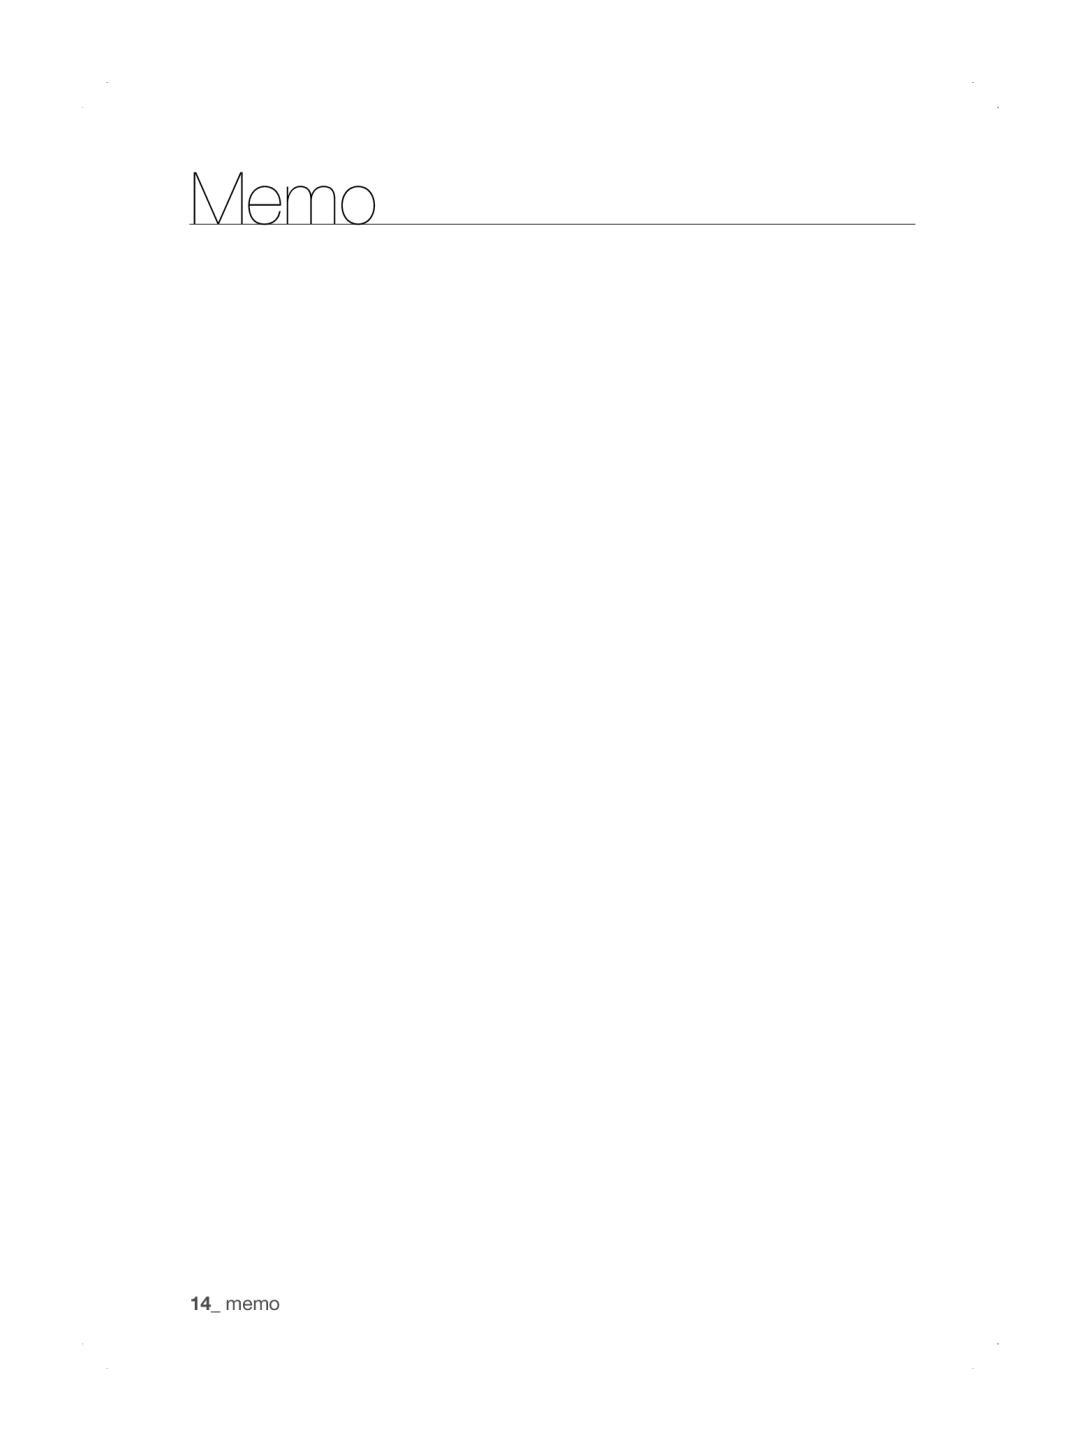 Samsung SU33 Series user manual memo, Memo 